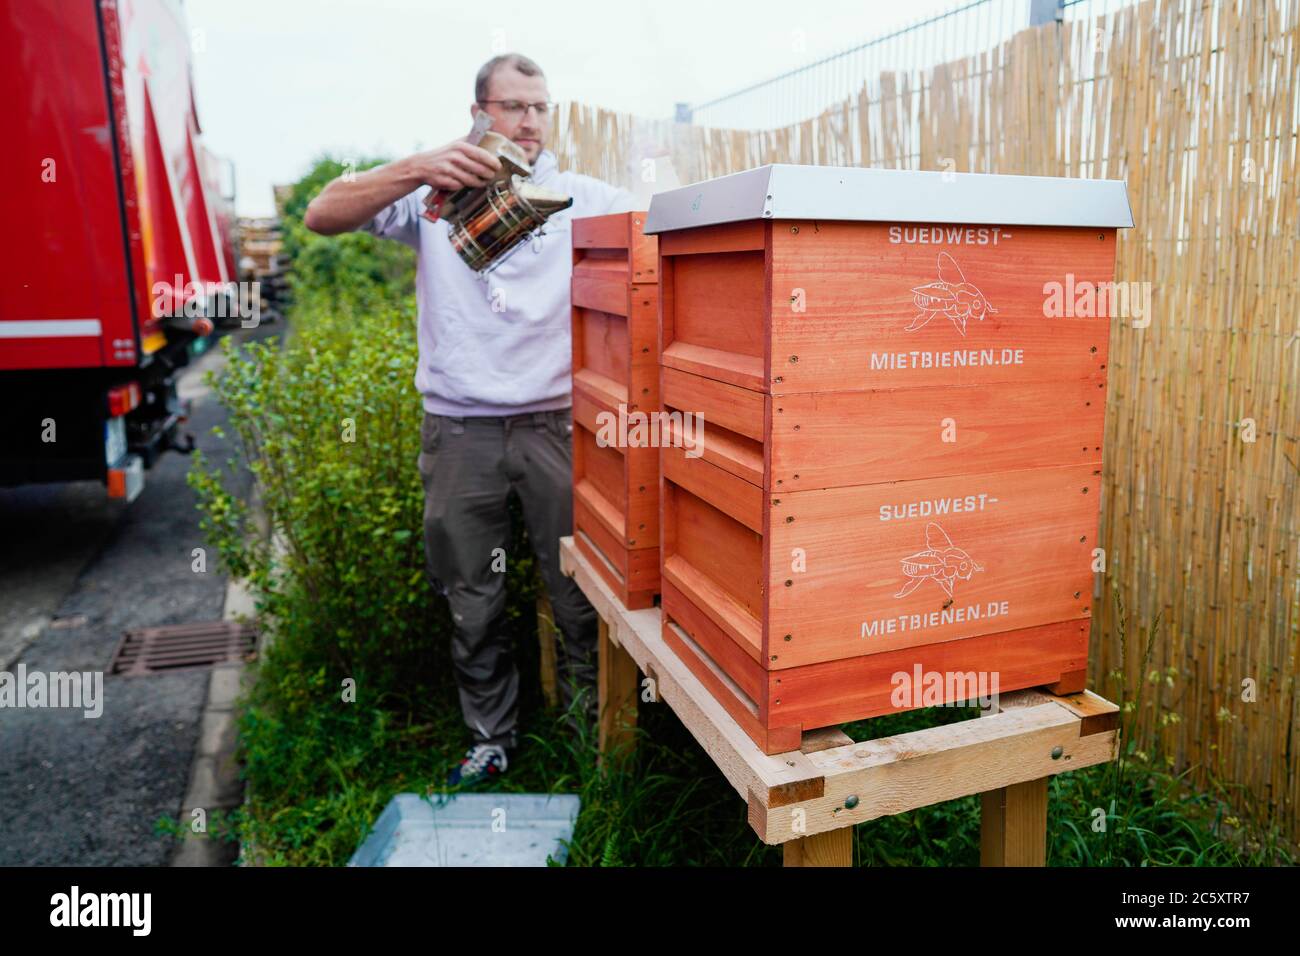 Heidelberg, Germania. 10 Giugno 2020. Jörg Staffel, fondatore della società 'üdwest Mietbienen', si trova a due alveari nei locali di un'agenzia di spedizione. Jörg Staffel può affittare 35 colonie di api e curarle al inquilino. (A dpa: 'Le api da noleggio che lavorano duramente volano per l'immagine e l'ambiente') Credit: Uwe Anspach/dpa/Alamy Live News Foto Stock